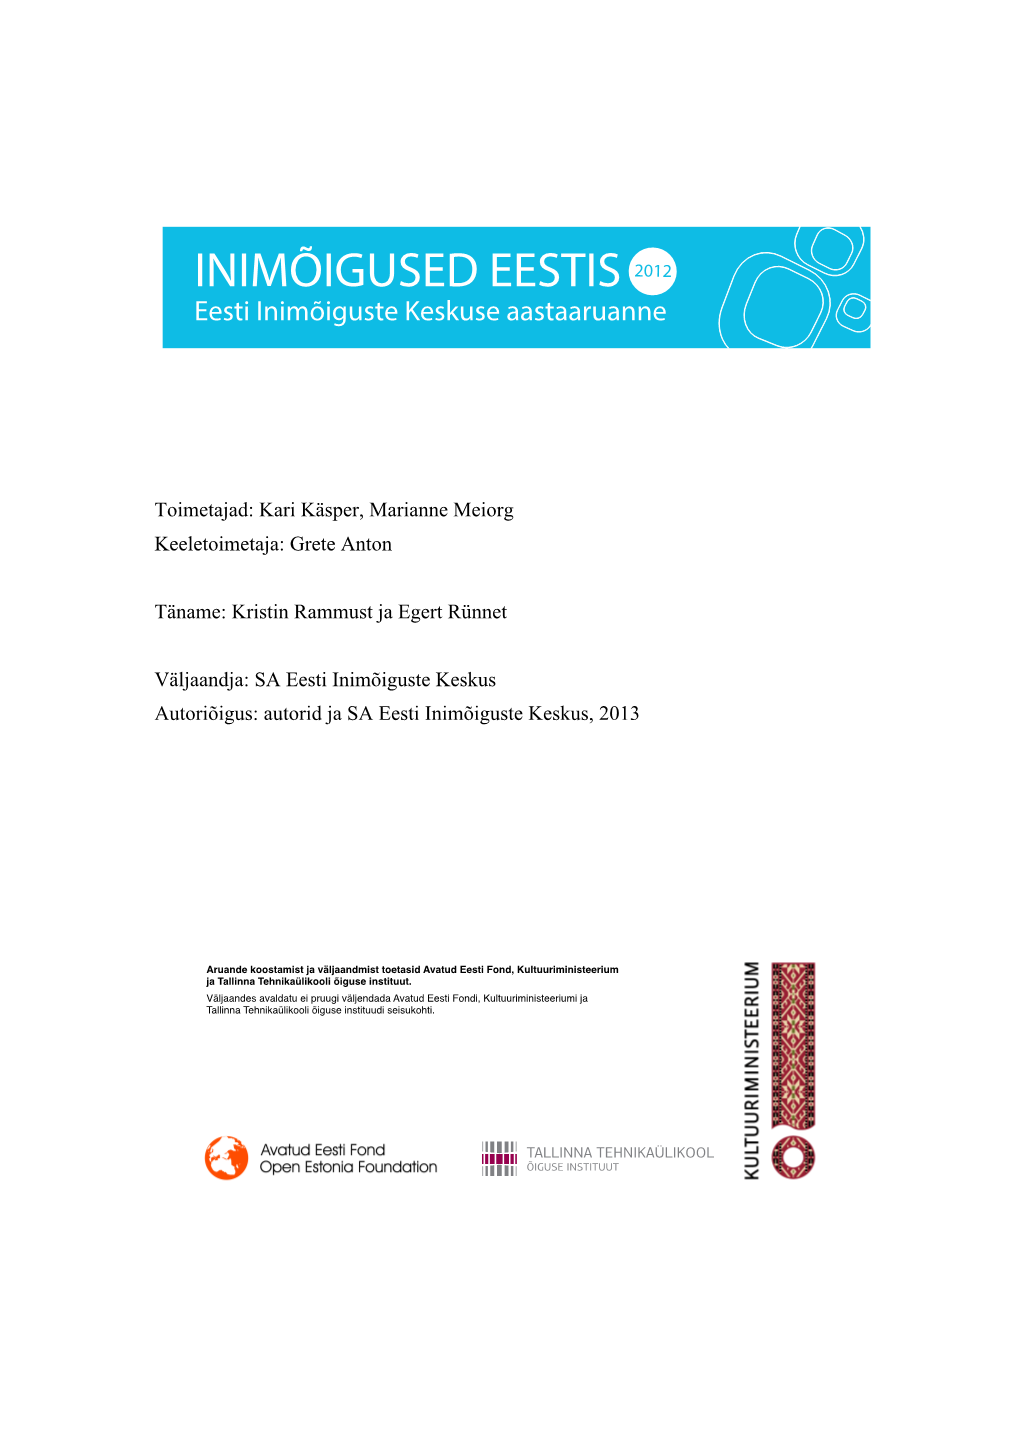 INIMÕIGUSED EESTIS 2012 Eesti Inimõiguste Keskuse Aastaaruanne